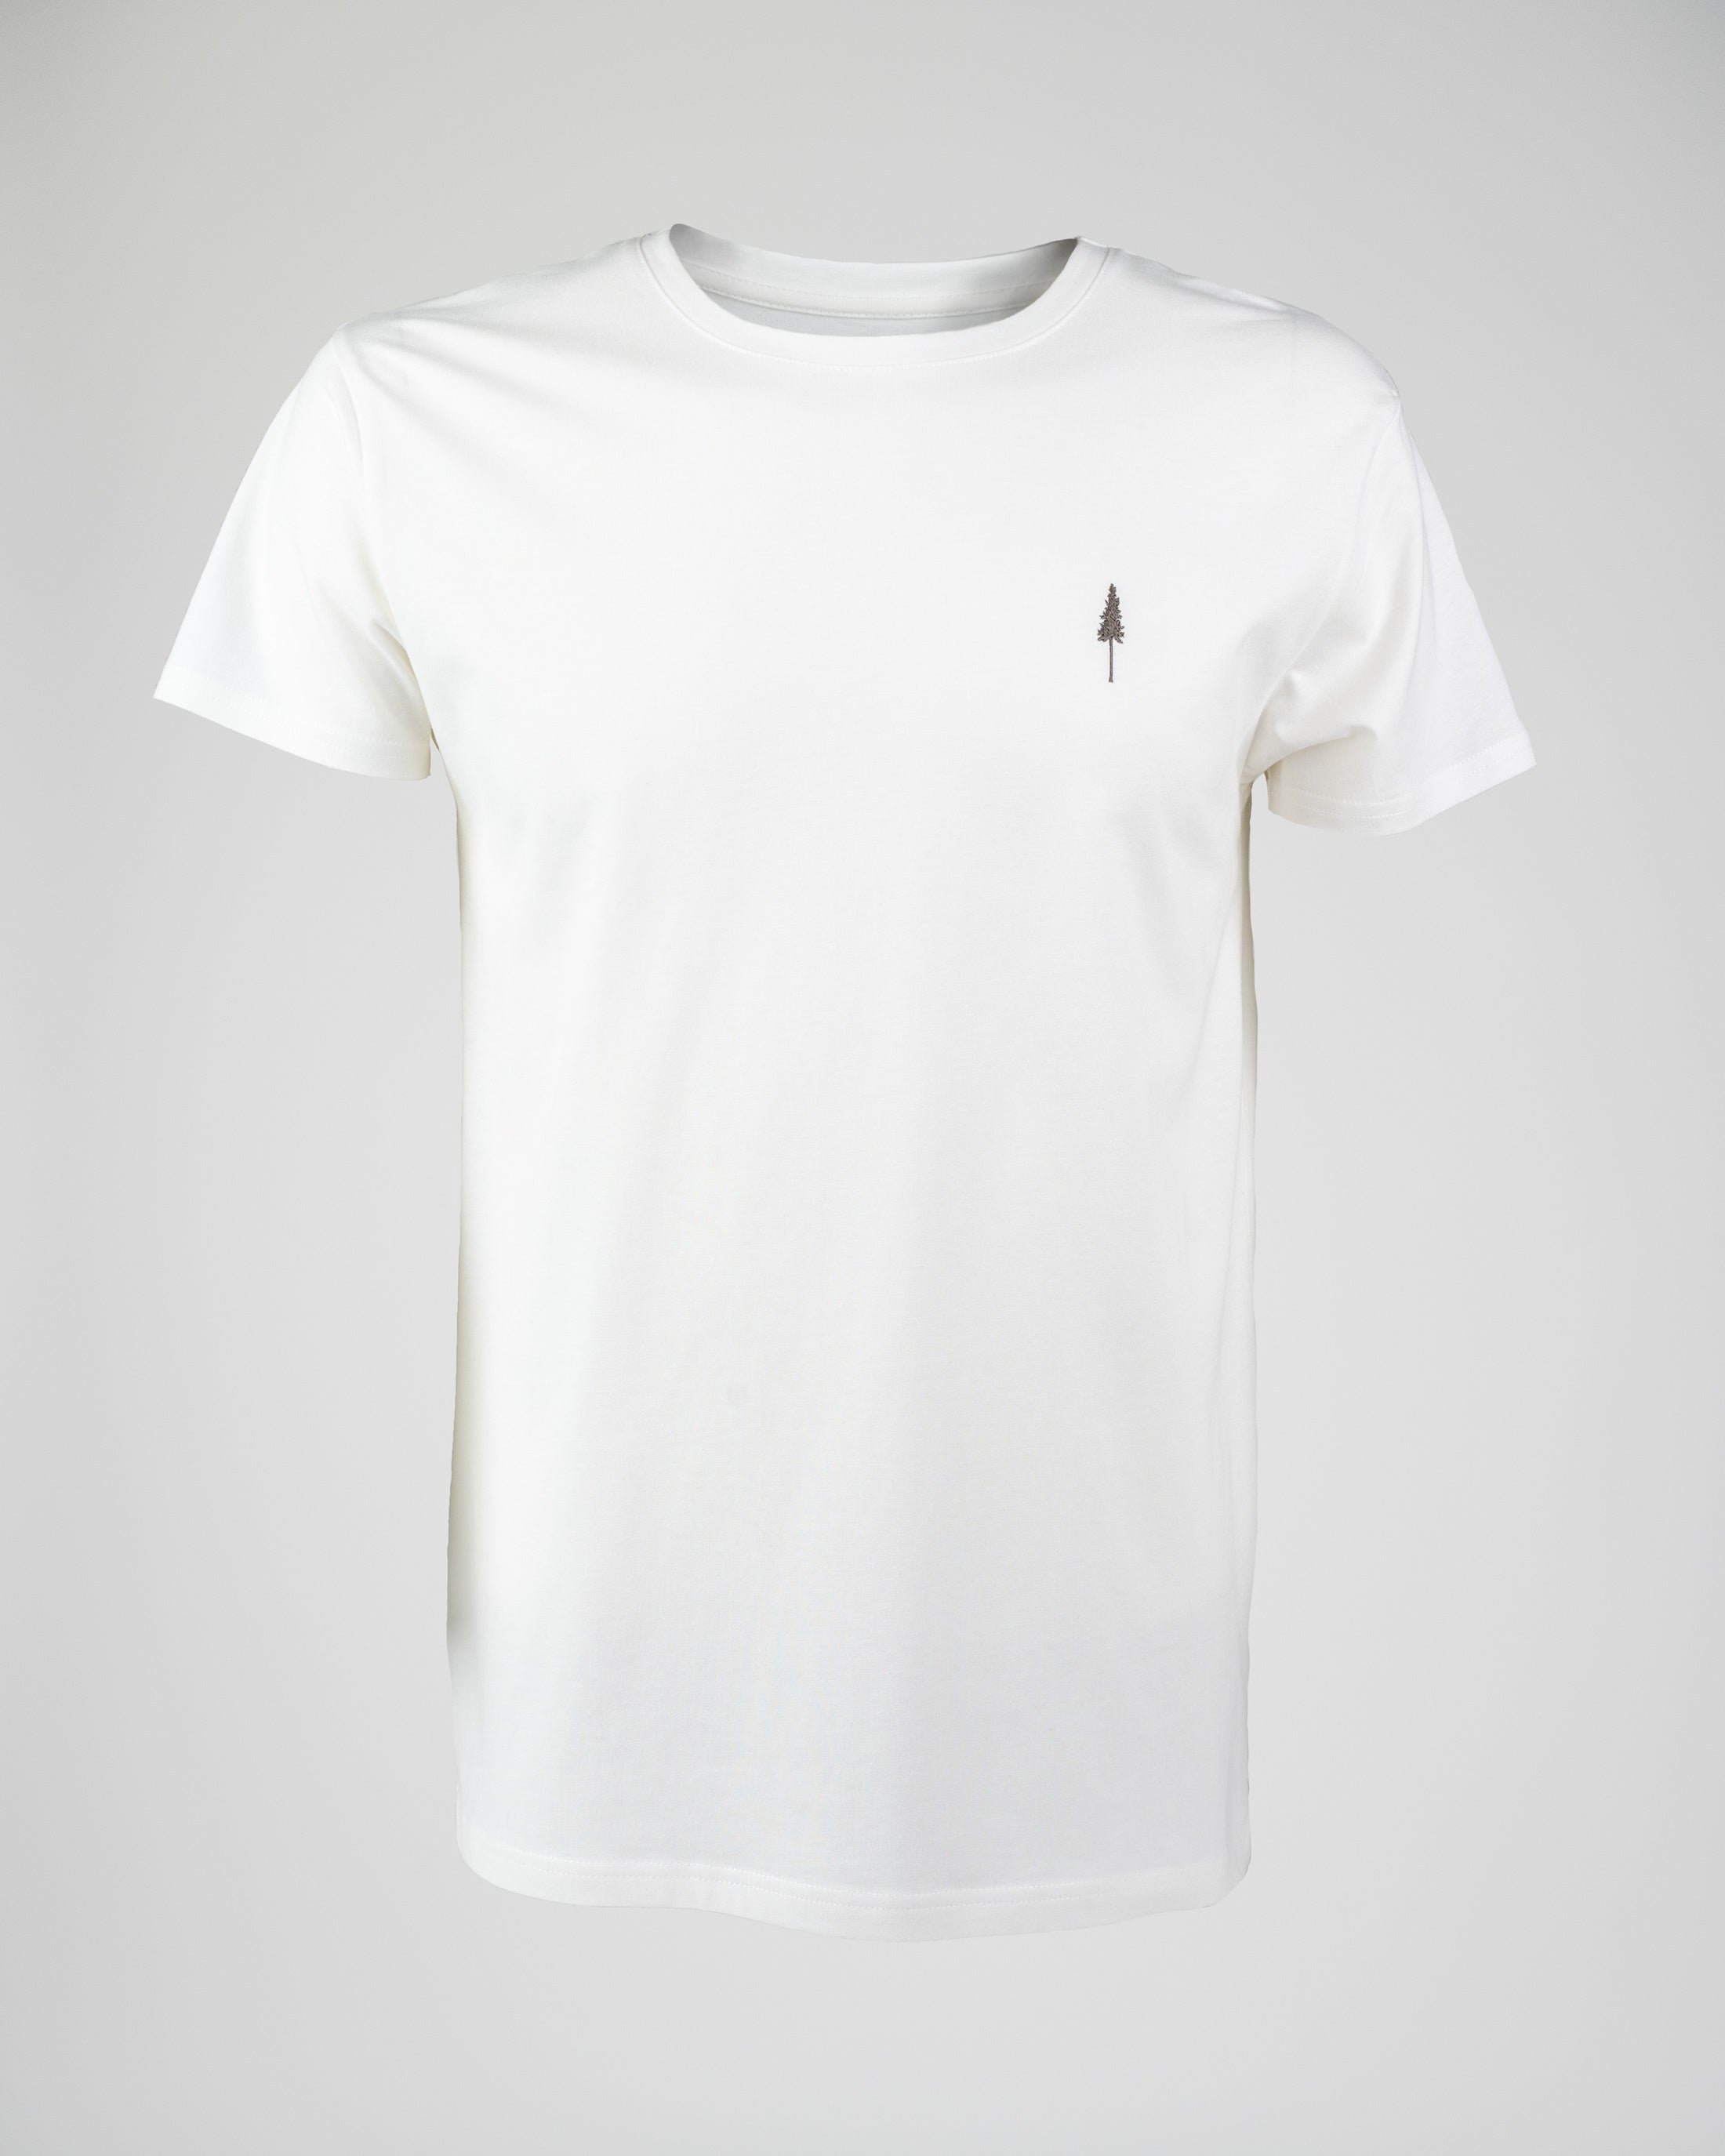 Men's organic cotton T-shirt Treeshirt White